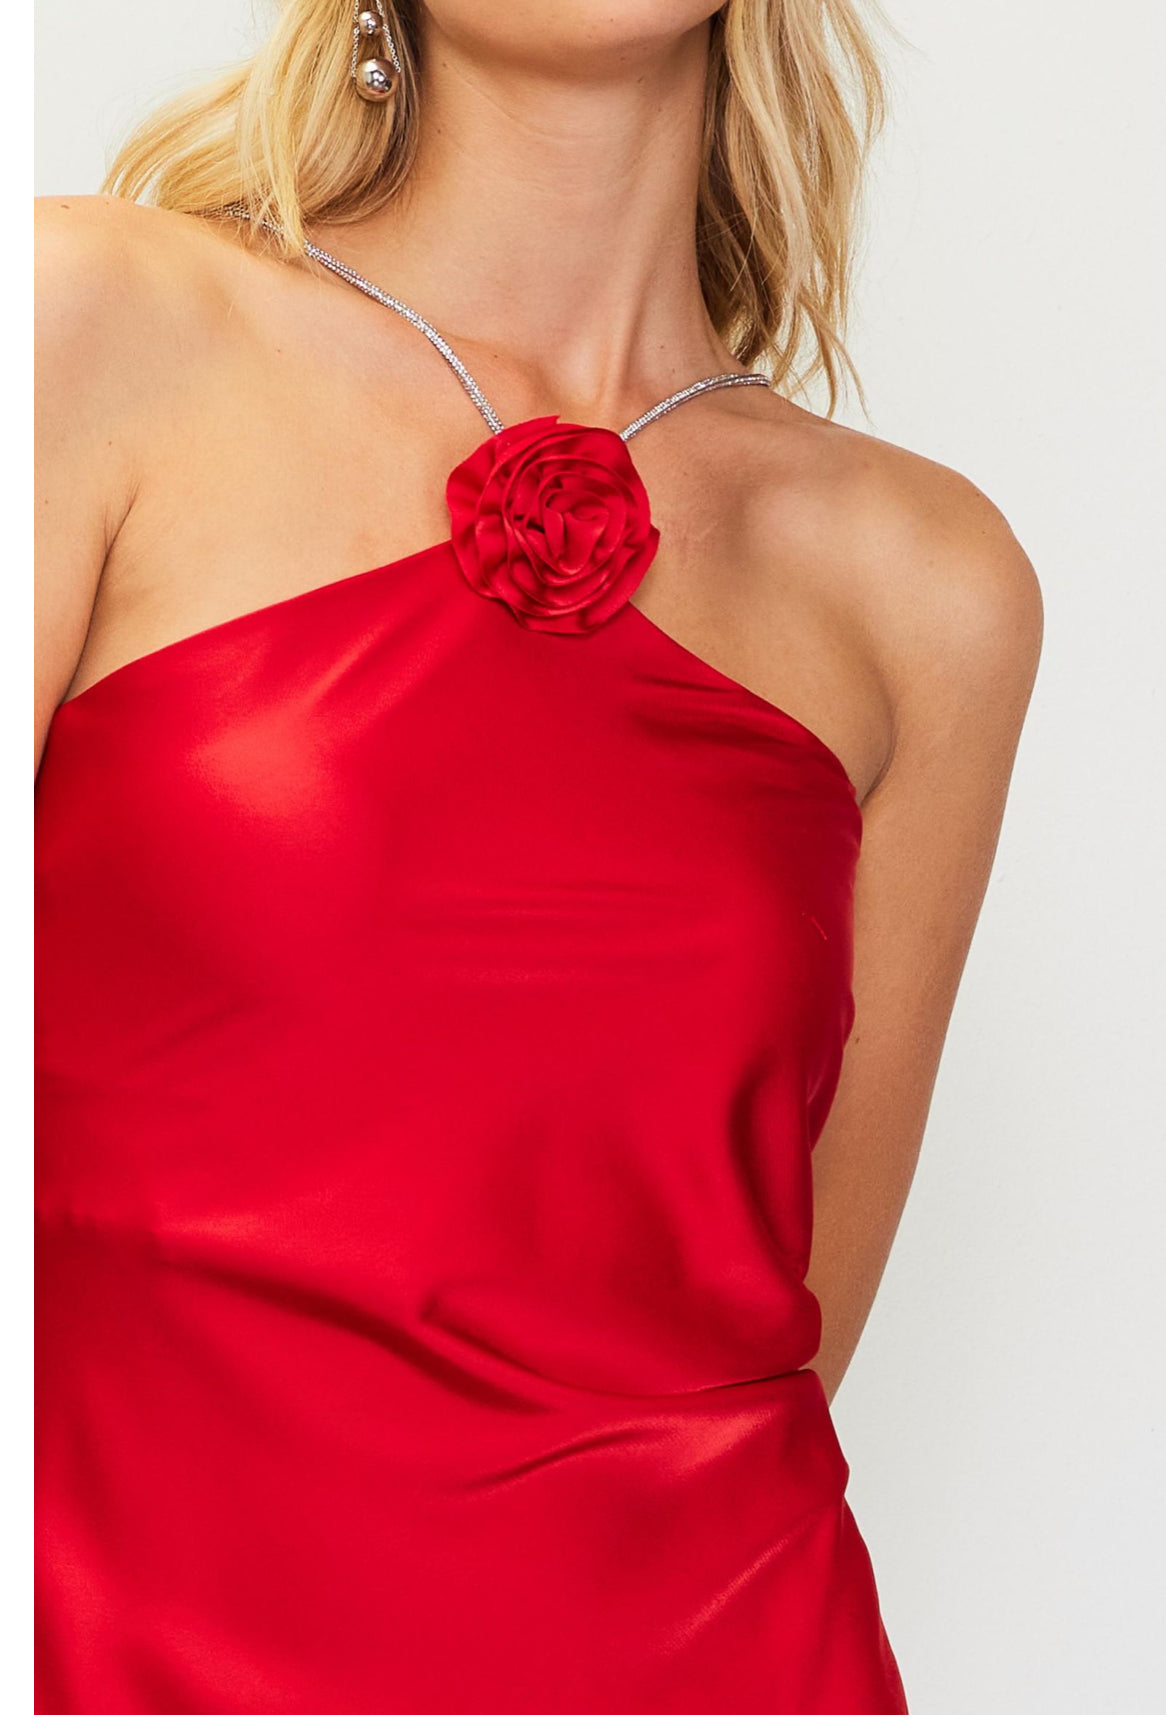 Red Rosette Halter Dress With Embellished Strap